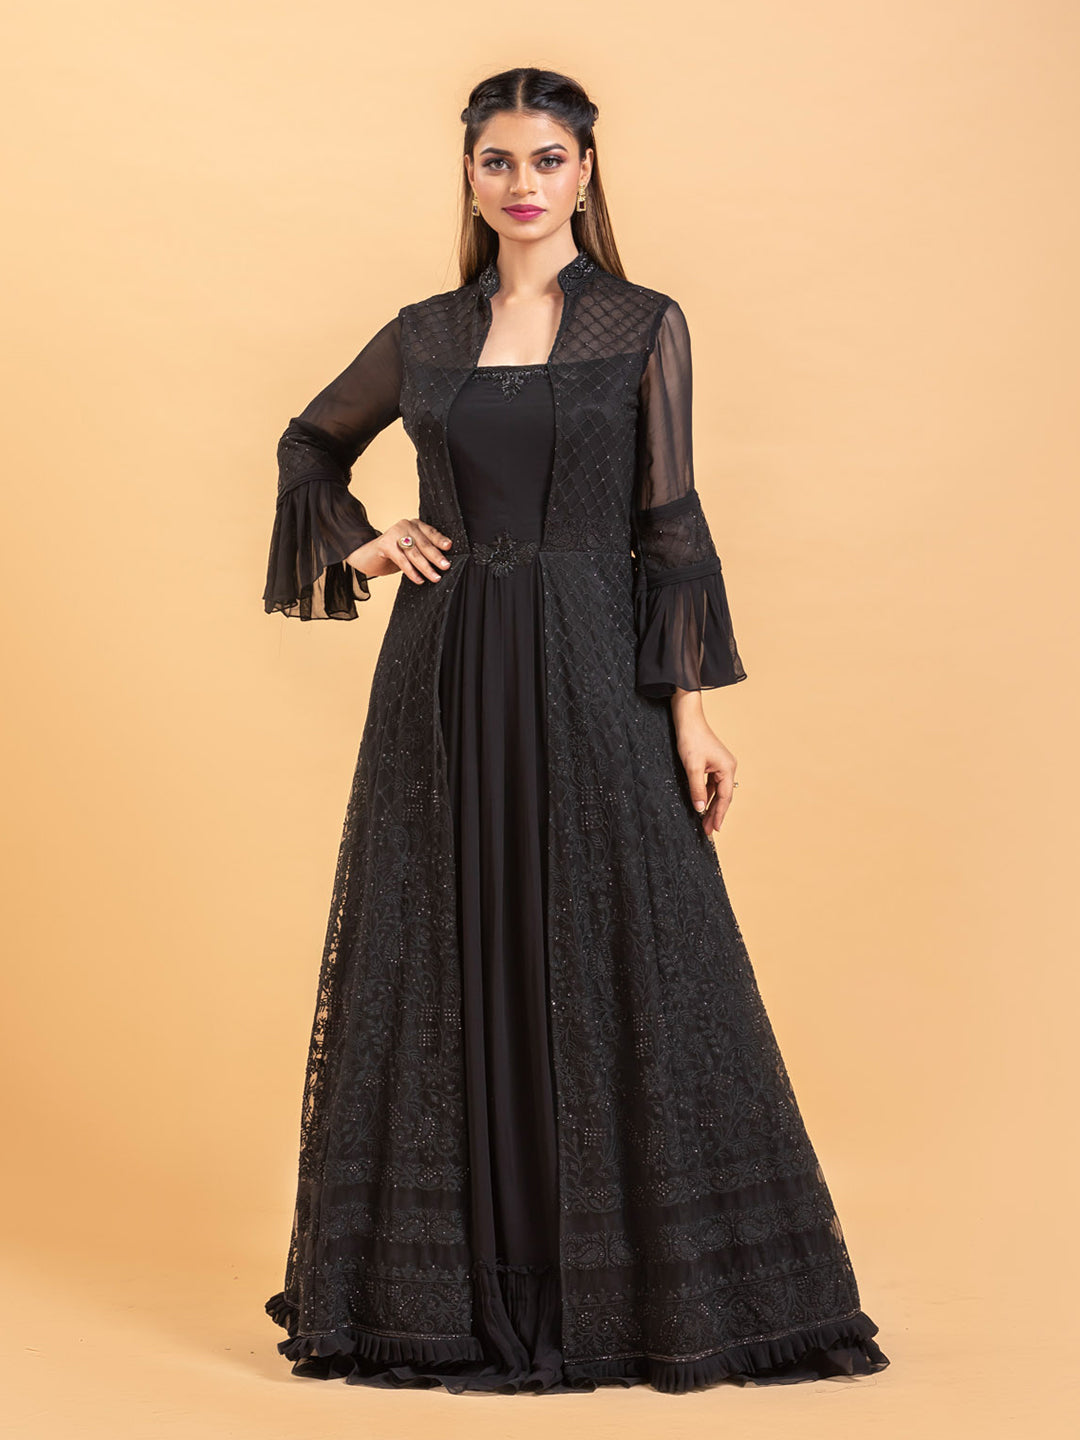 Heenastyle - Black Color Soft Net Designer Evening Wear Plus Size Gown Suit  - 3718149244 https://www.heenastyle.com/salwar/black-color-soft-net -designer-evening-wear-plus-size-gown-suit-3718149244 Sale Special Price  $104 USD | Facebook